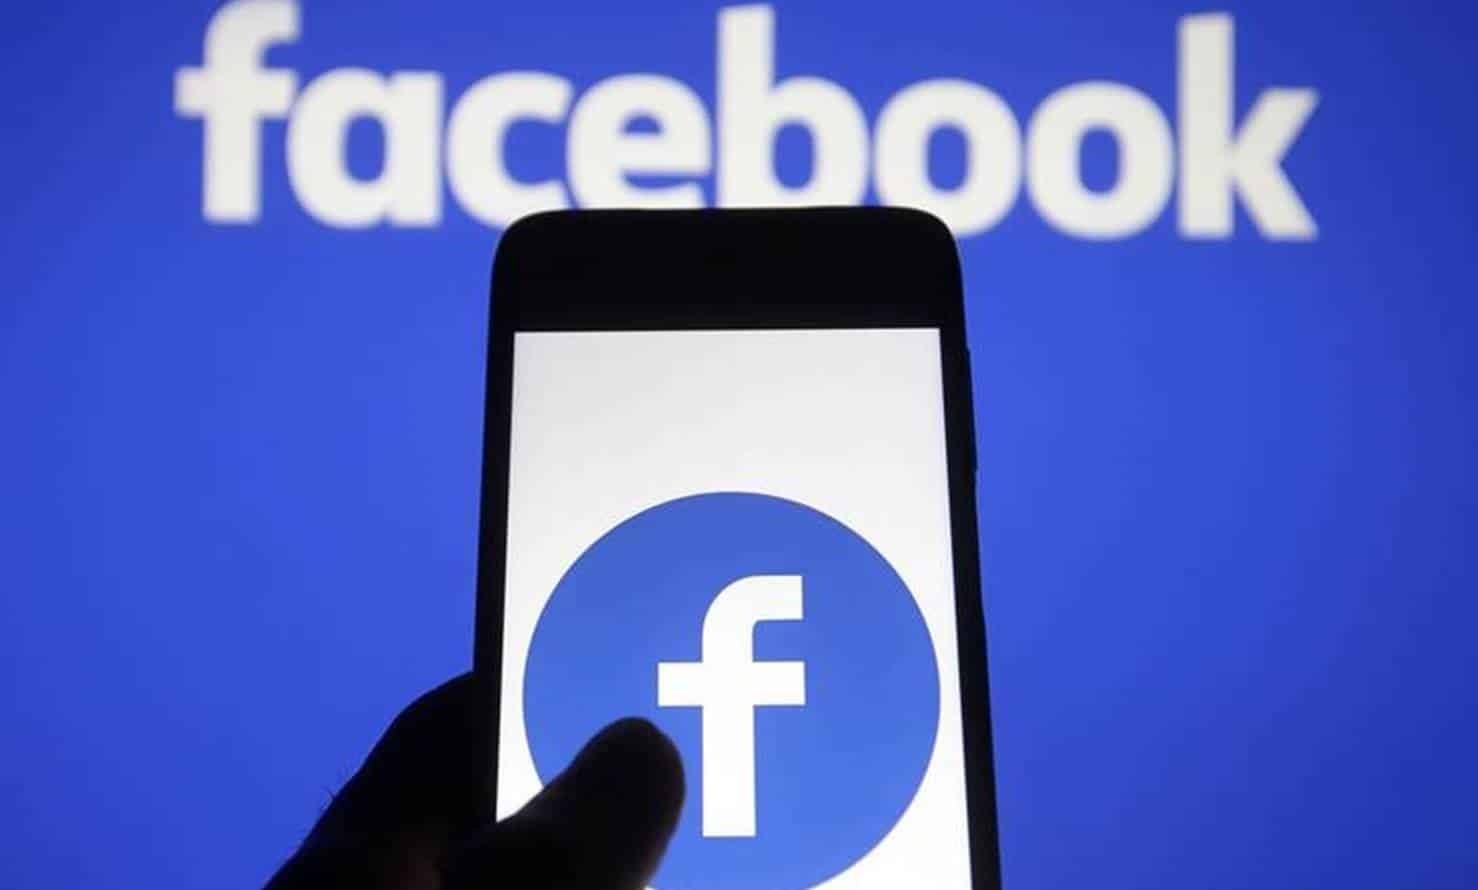 Facebook detecta uma falha de segurança ao analisar fotos no app